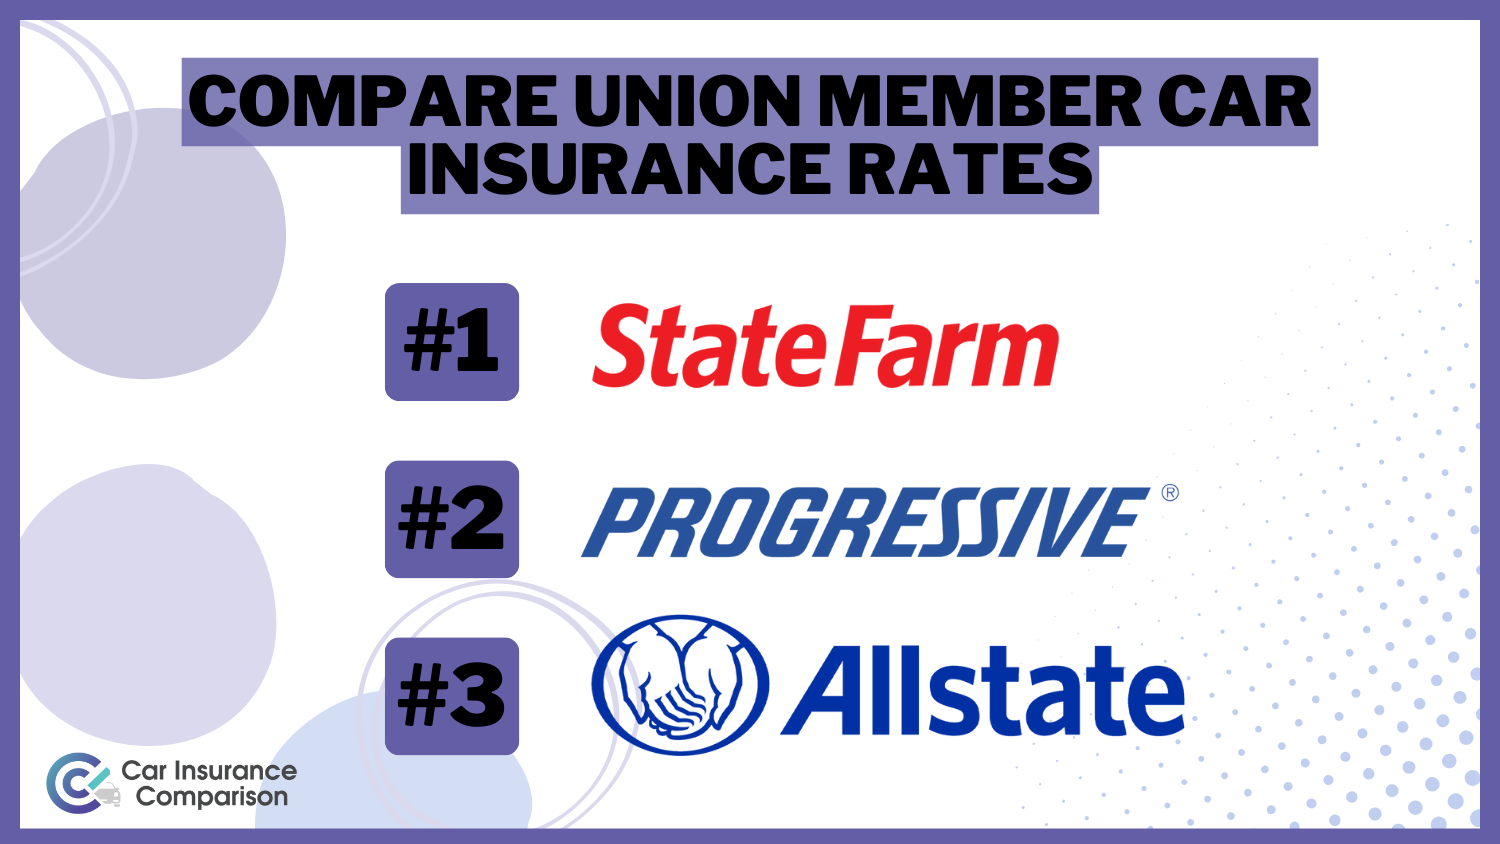 3 Best Auto Insurance companies for Union Members: State Farm, Progressive, Allstate